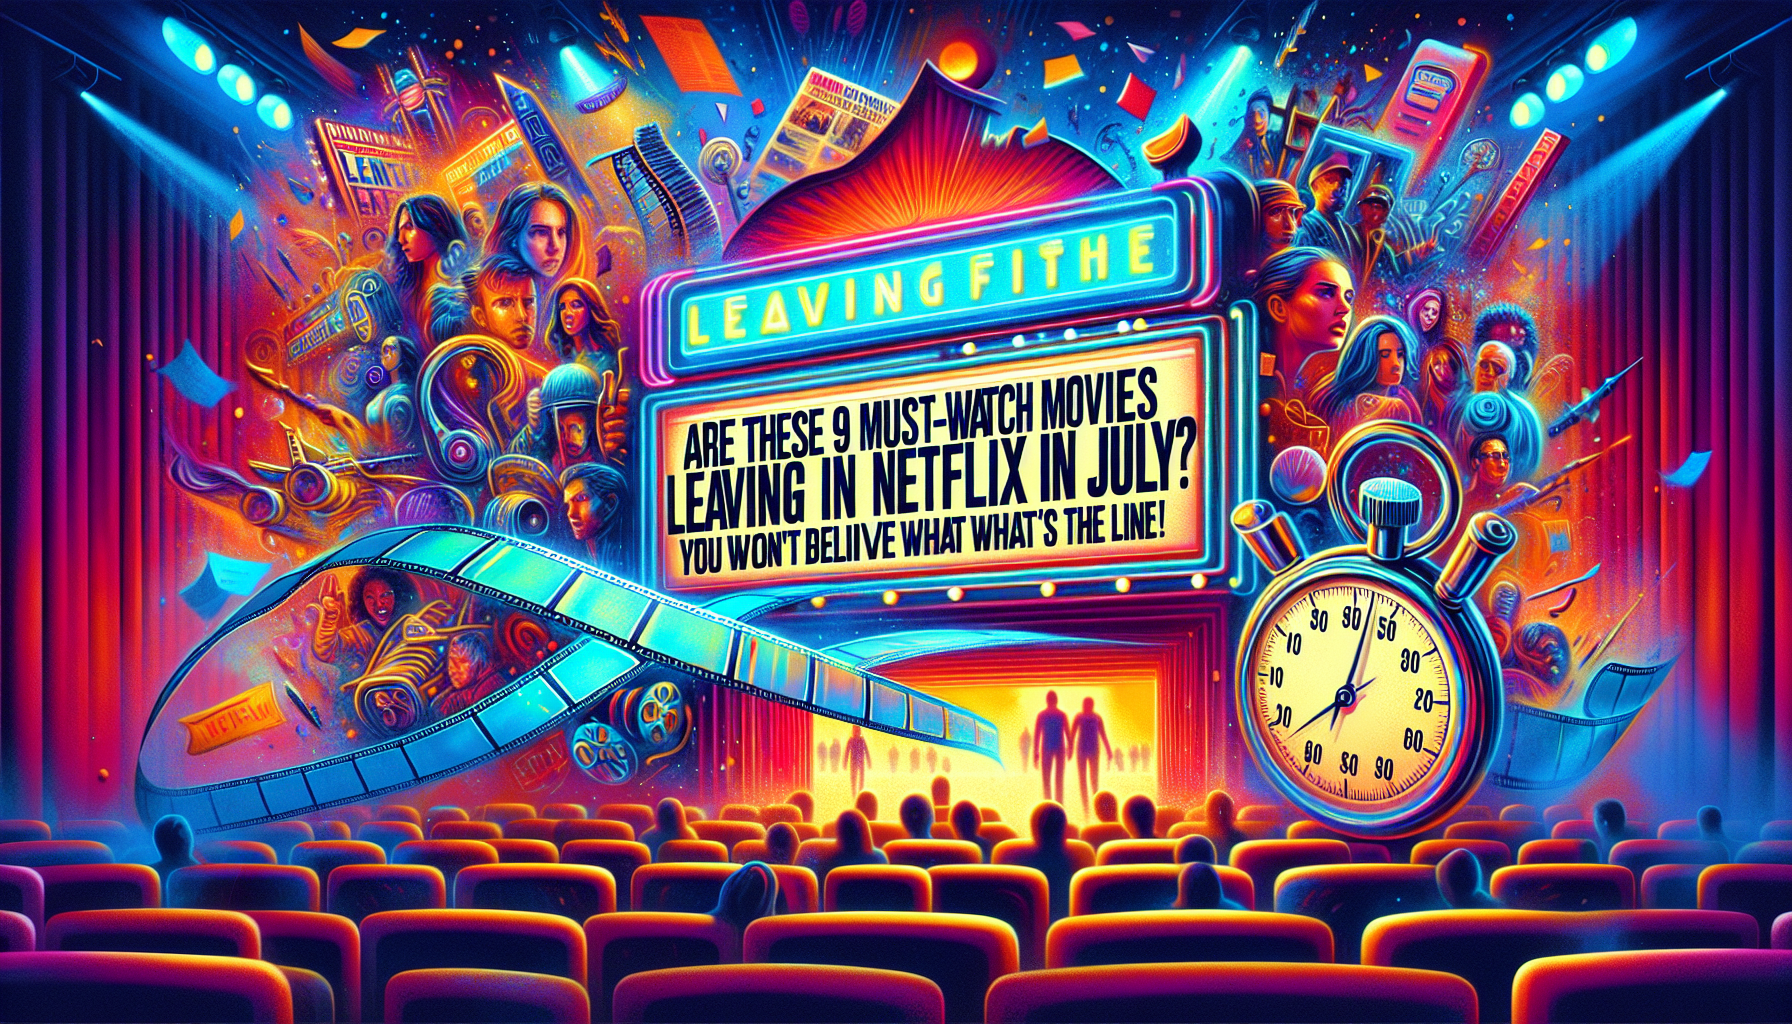 Descubra las 9 películas imprescindibles que se rumorea que dejarán Netflix en julio. ¡Descubre lo que está en juego y prepárate para sorprenderte!